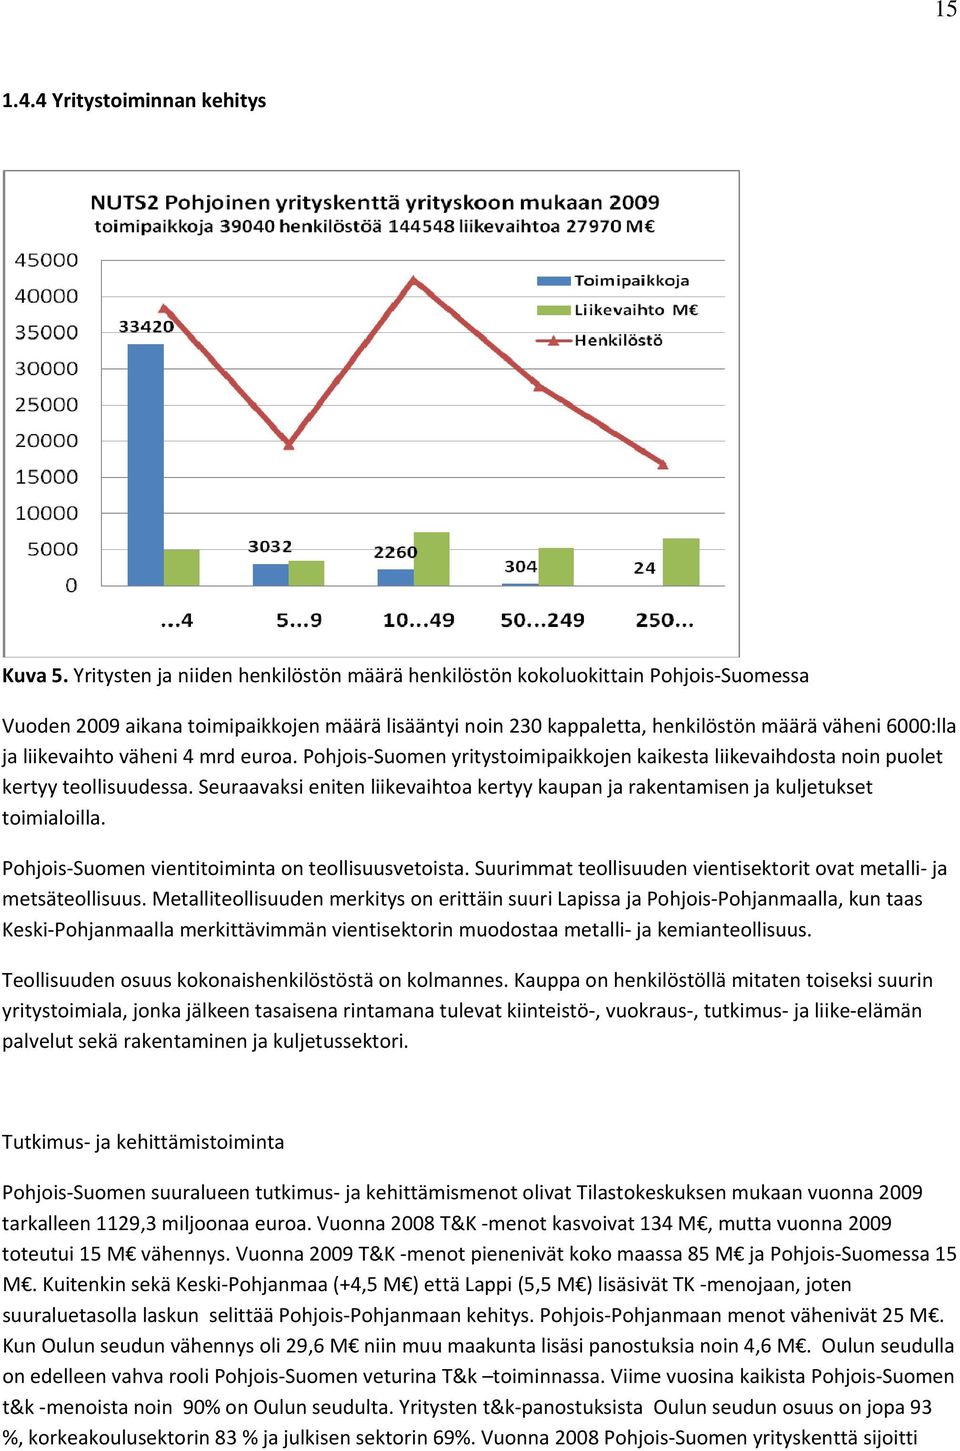 liikevaihto väheni 4 mrd euroa. Pohjois Suomen yritystoimipaikkojen kaikesta liikevaihdosta noin puolet kertyy teollisuudessa.